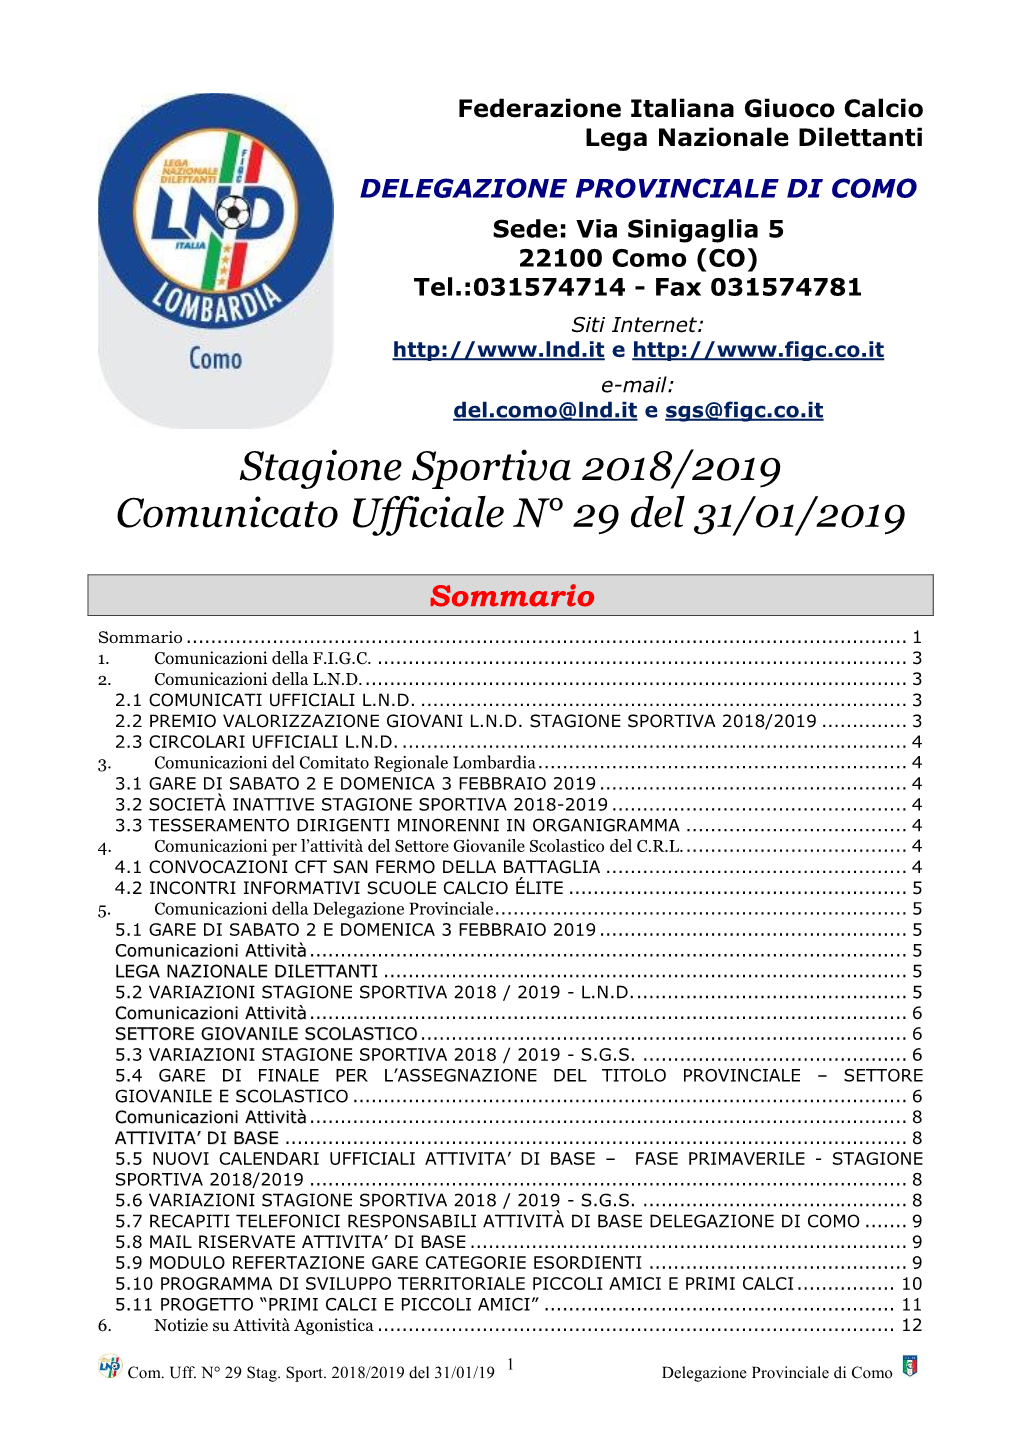 Stagione Sportiva 2018/2019 Comunicato Ufficiale N° 29 Del 31/01/2019